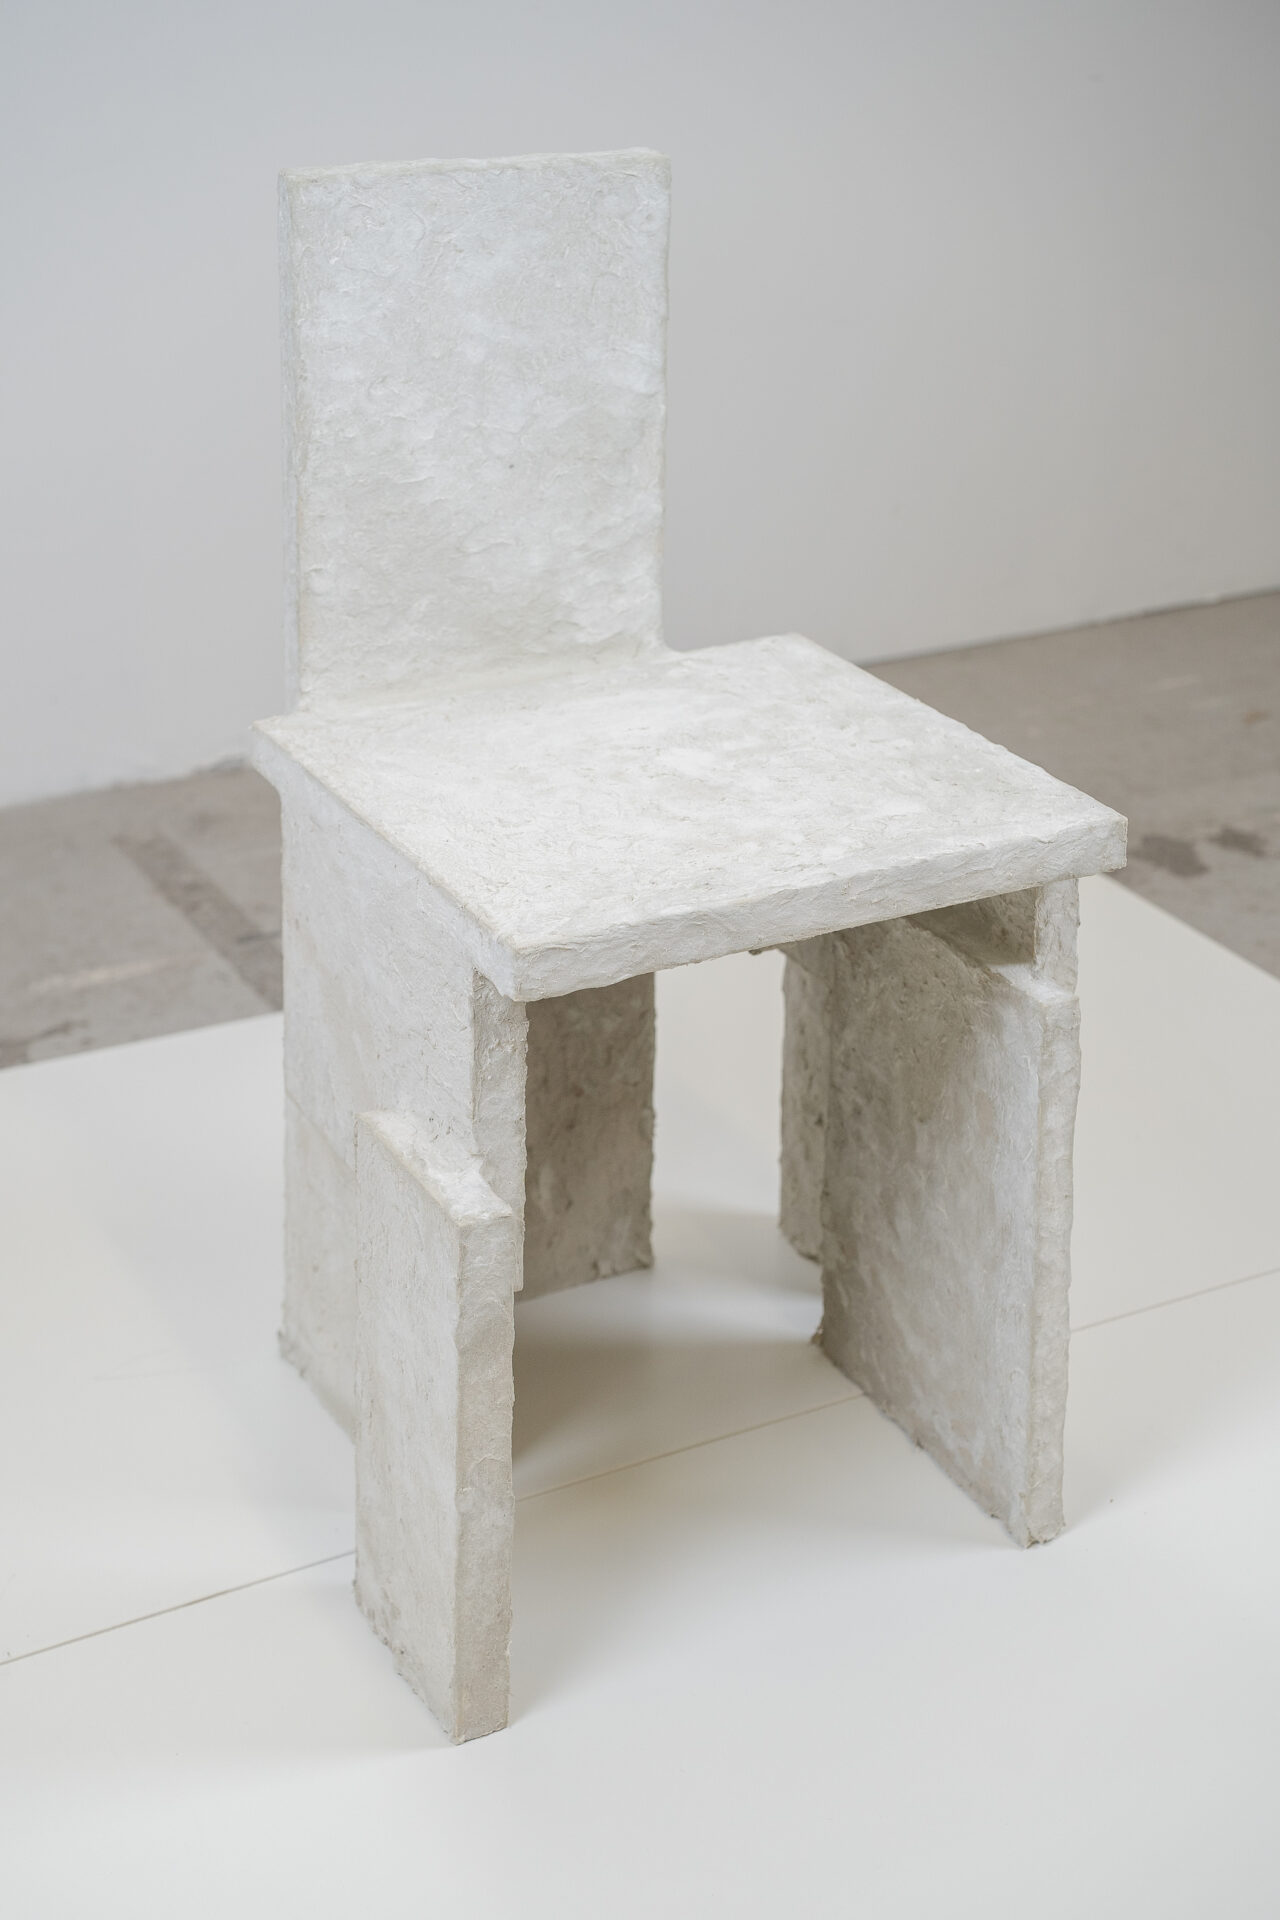 Shop - Paper Chair